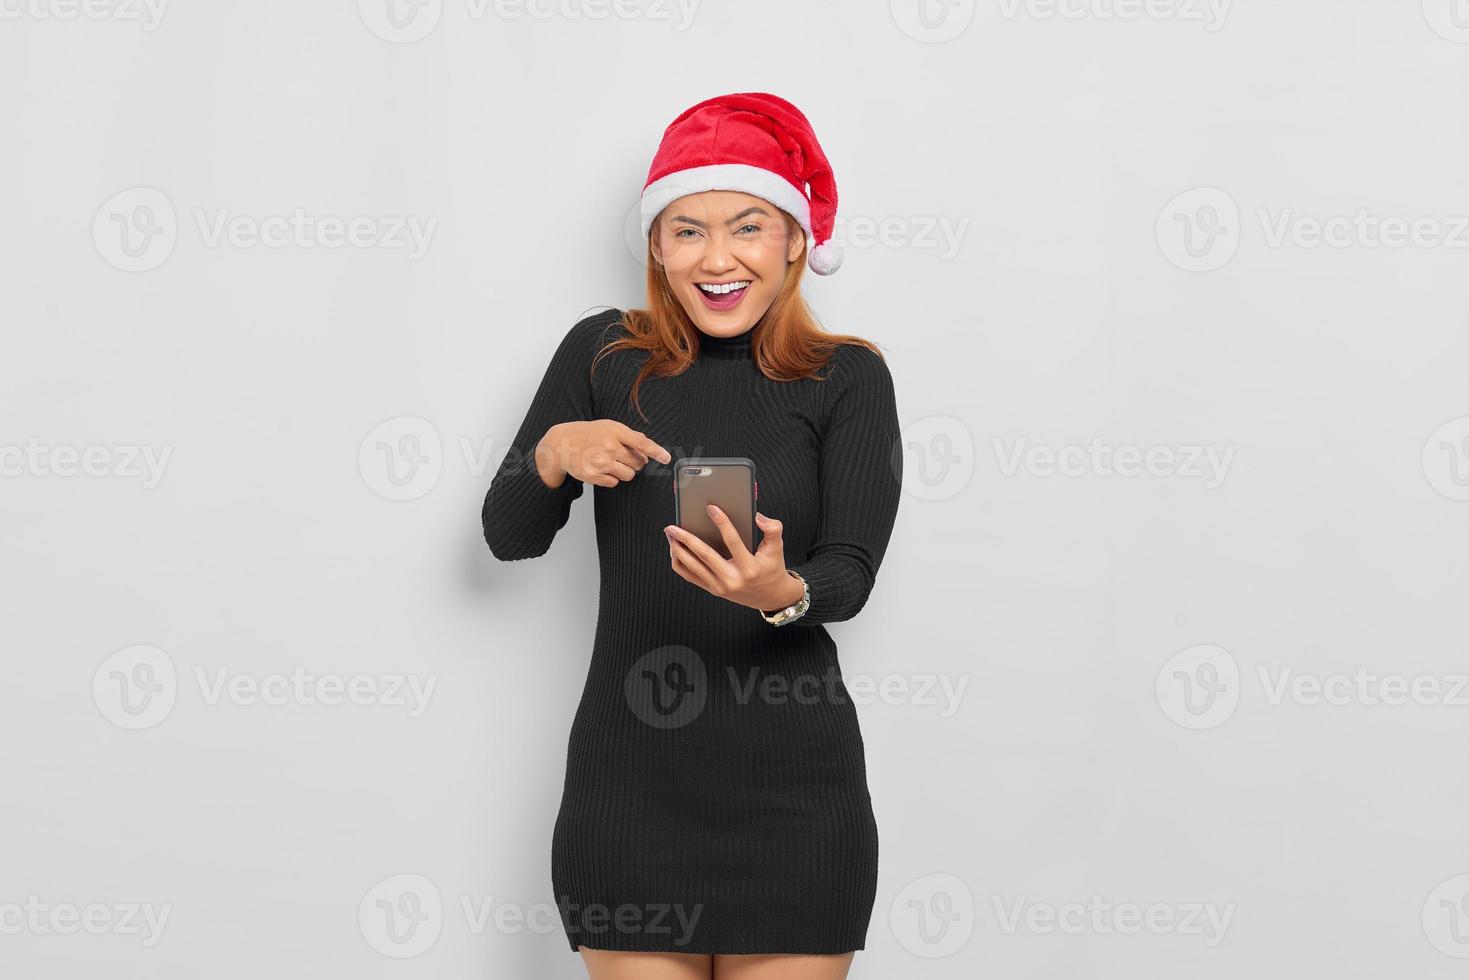 jovem asiática alegre com chapéu de Papai Noel apontando o dedo para o celular isolado sobre fundo branco foto